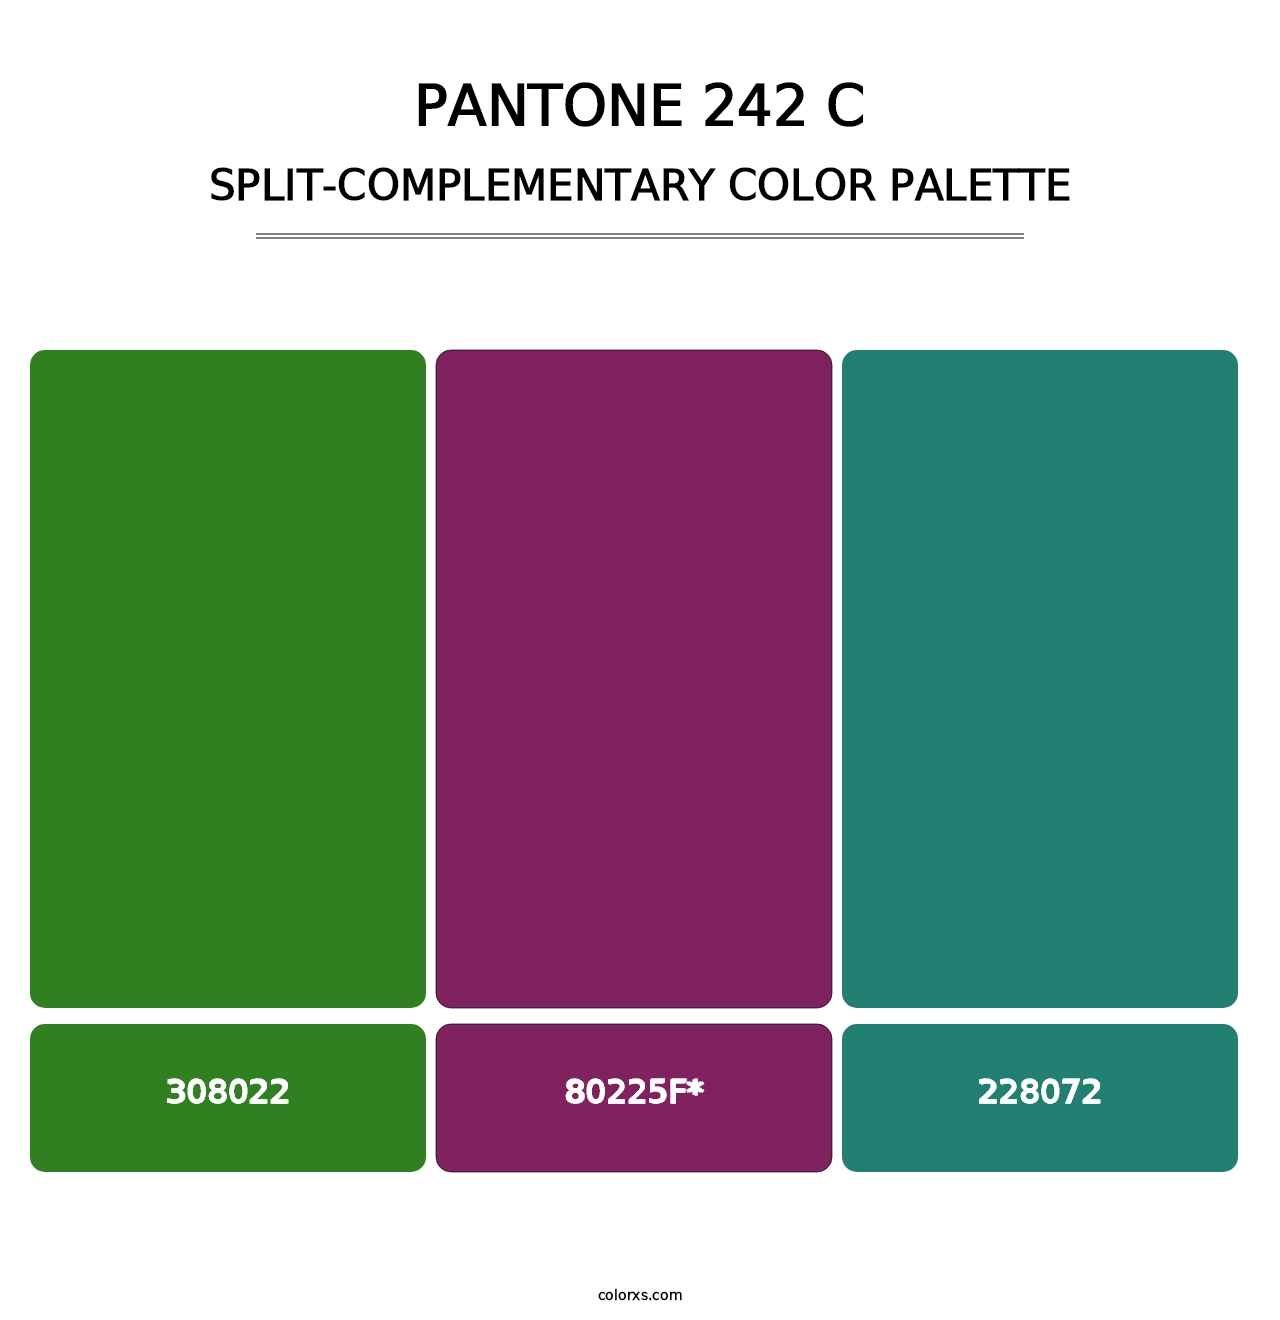 PANTONE 242 C - Split-Complementary Color Palette